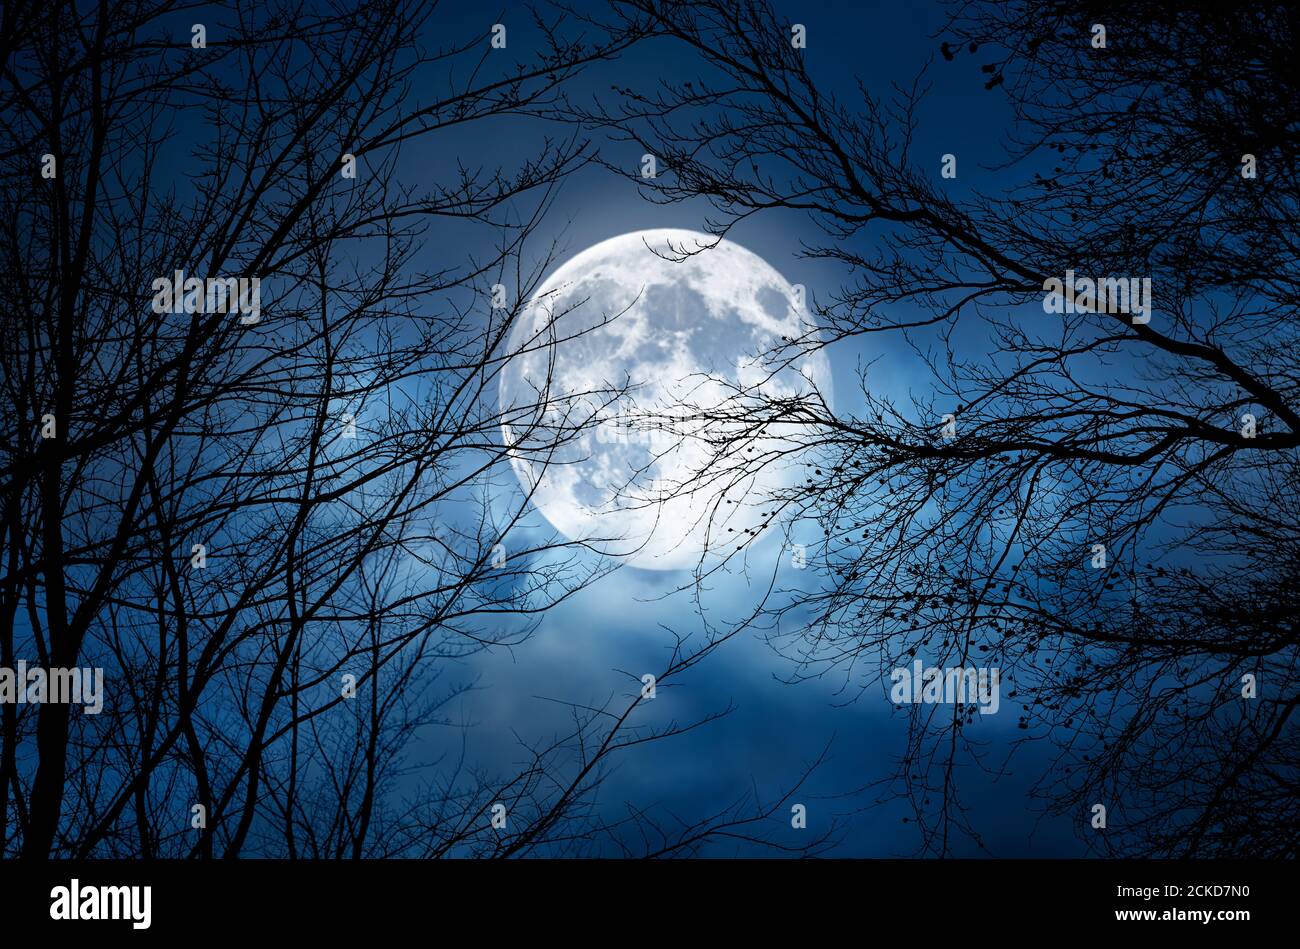 La silhouette di un rametto nudo spooky halloween albero contro un cielo notturno blu d'inverno con una luna piena e luminosa e nuvole Foto Stock